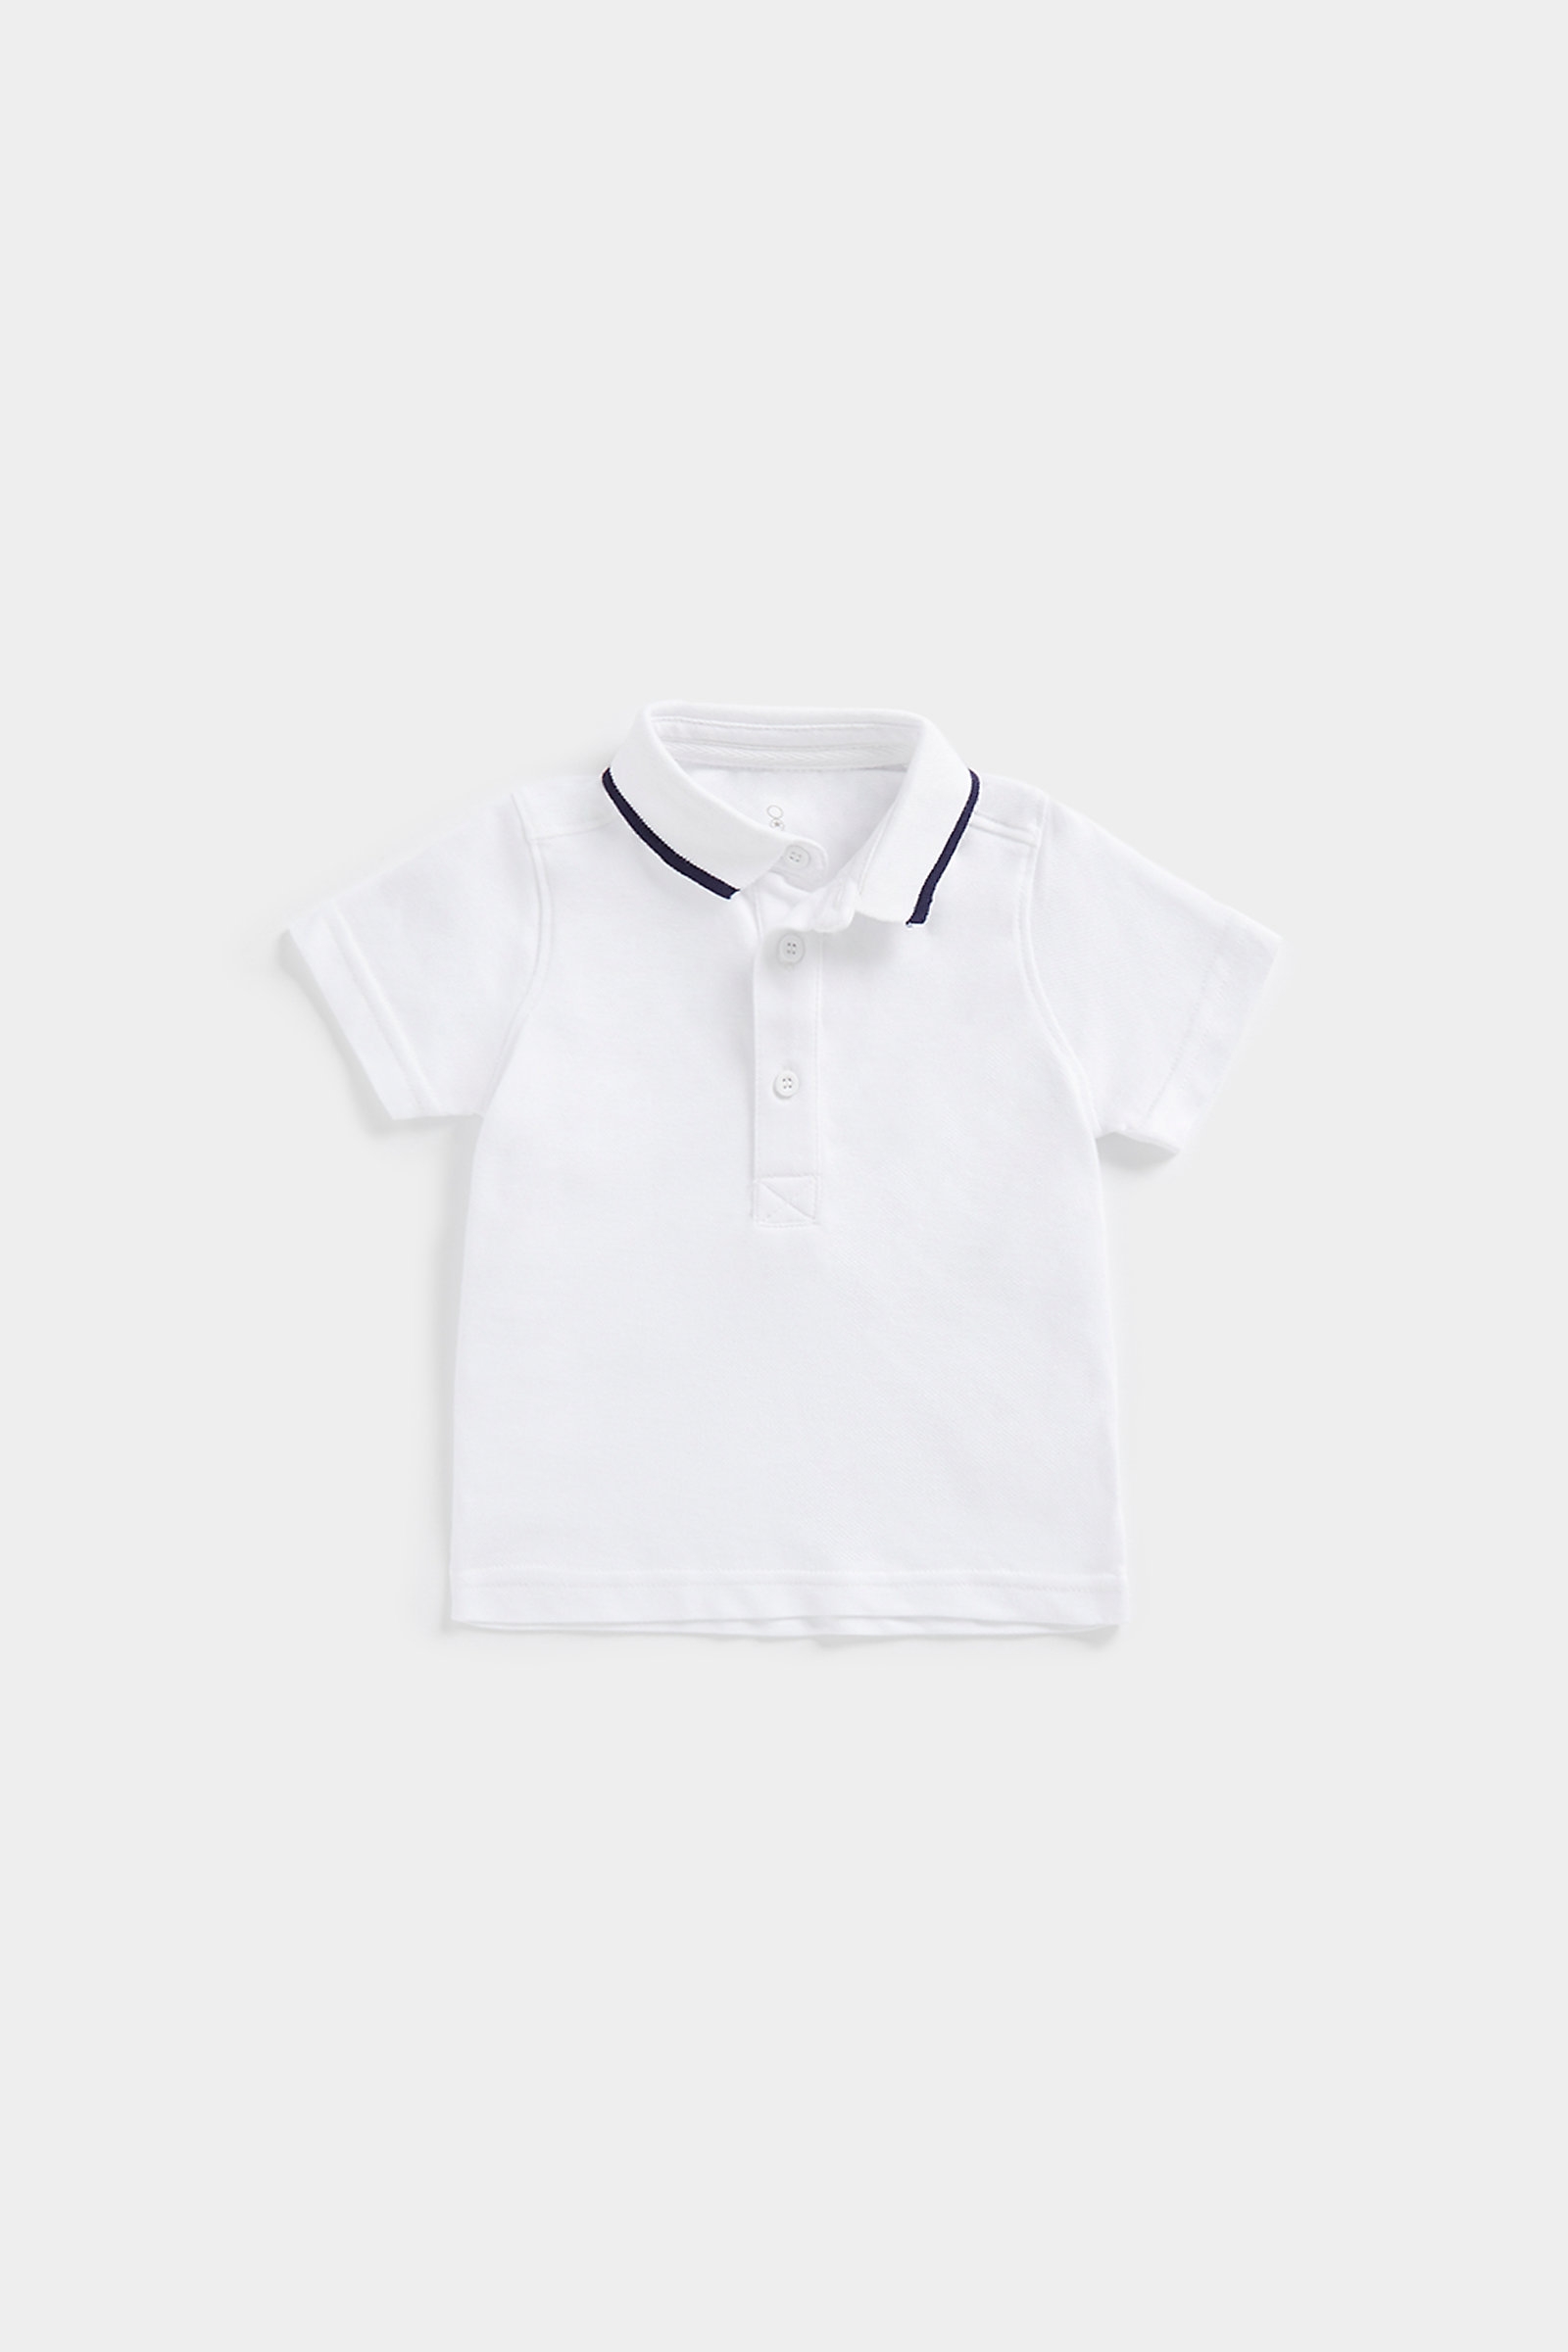 Mothercare Boys Short Sleeves Polo -White